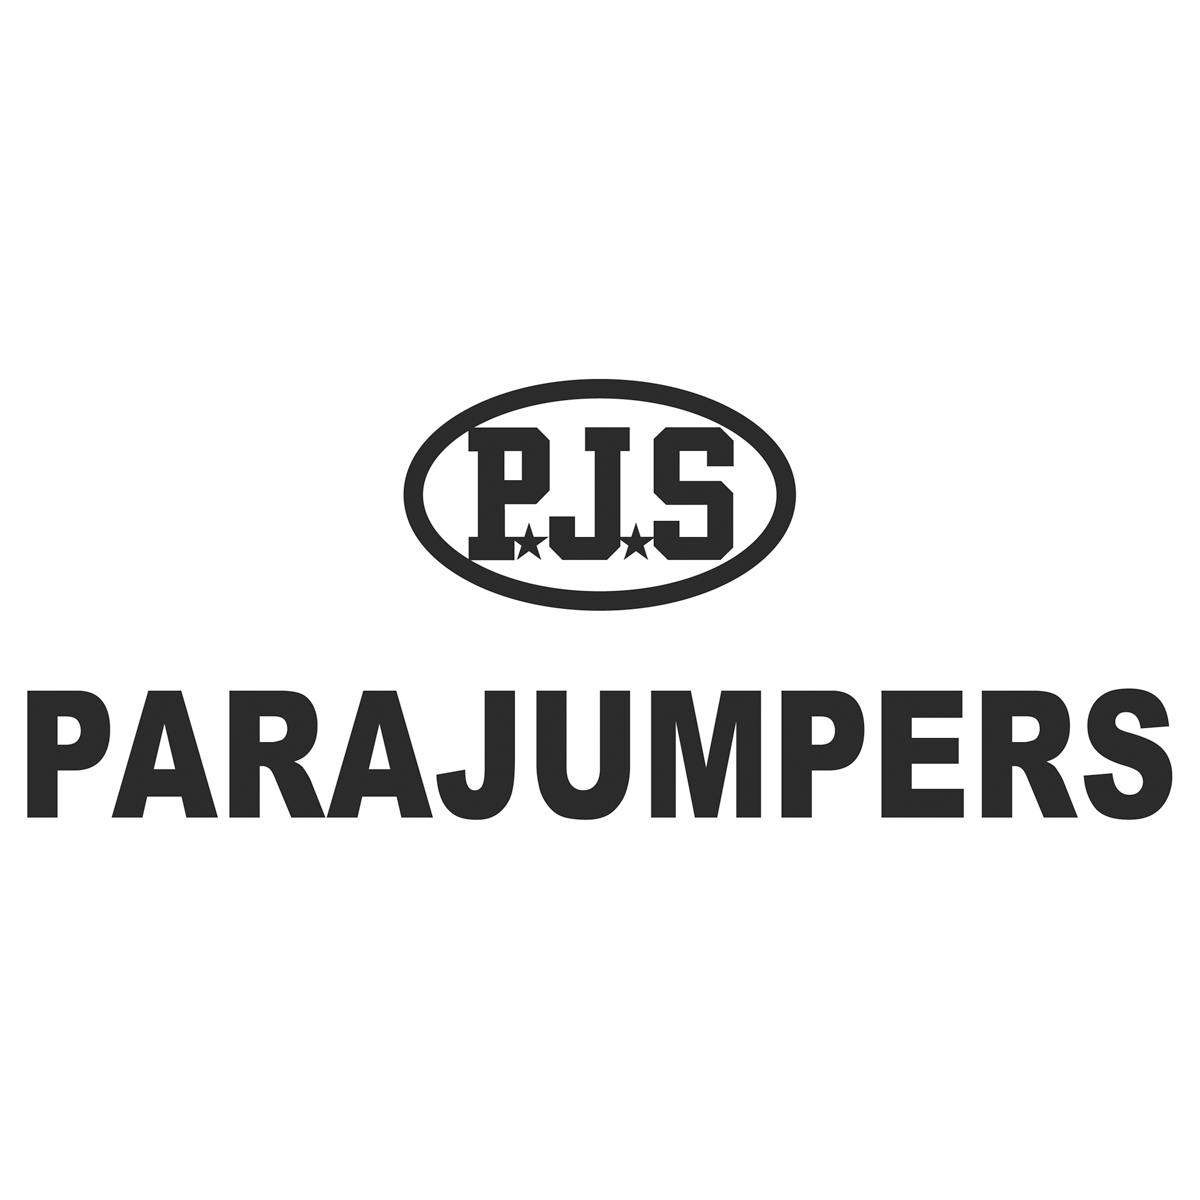 История и особенности Parajumpers